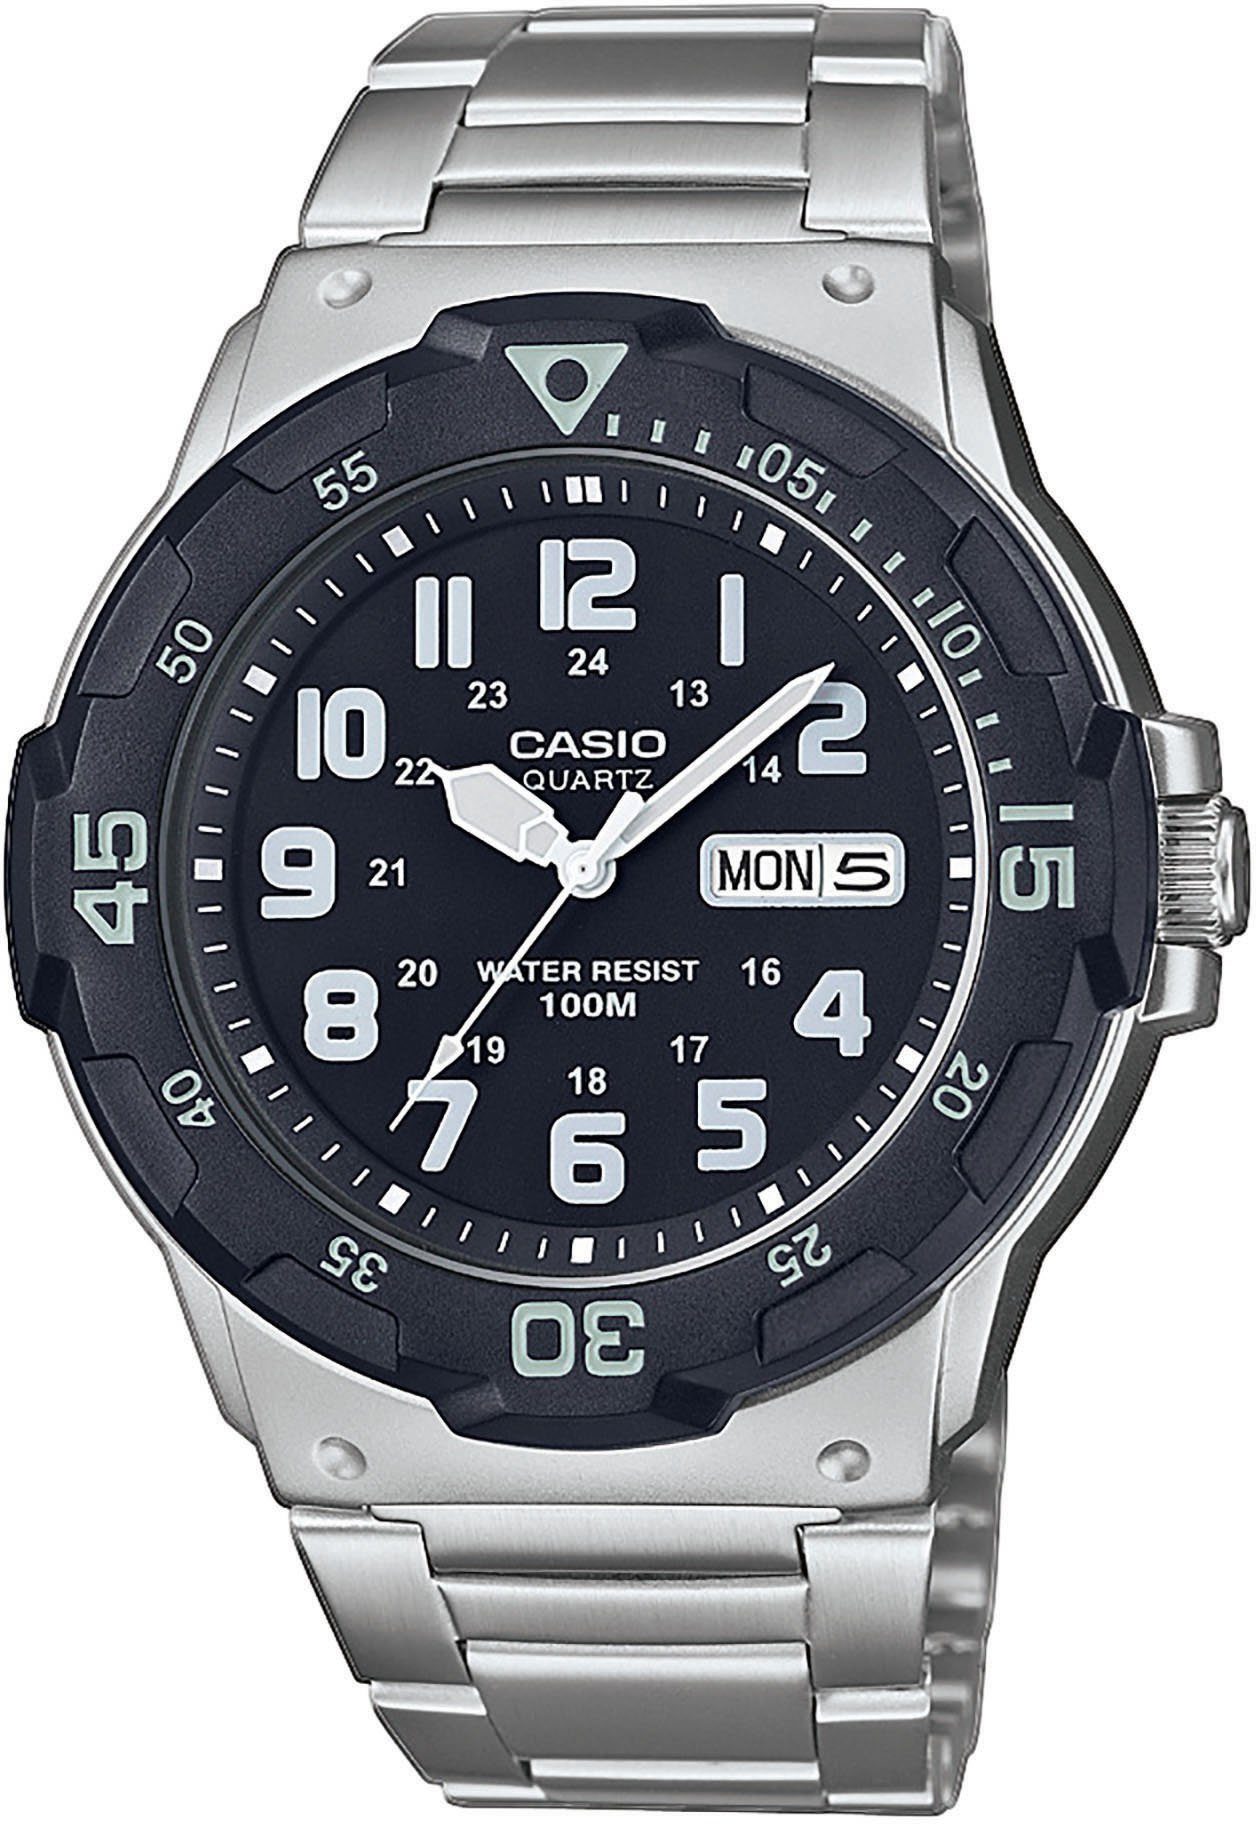 Herren Uhren Casio Collection Quarzuhr MRW-200HD-1BVEF